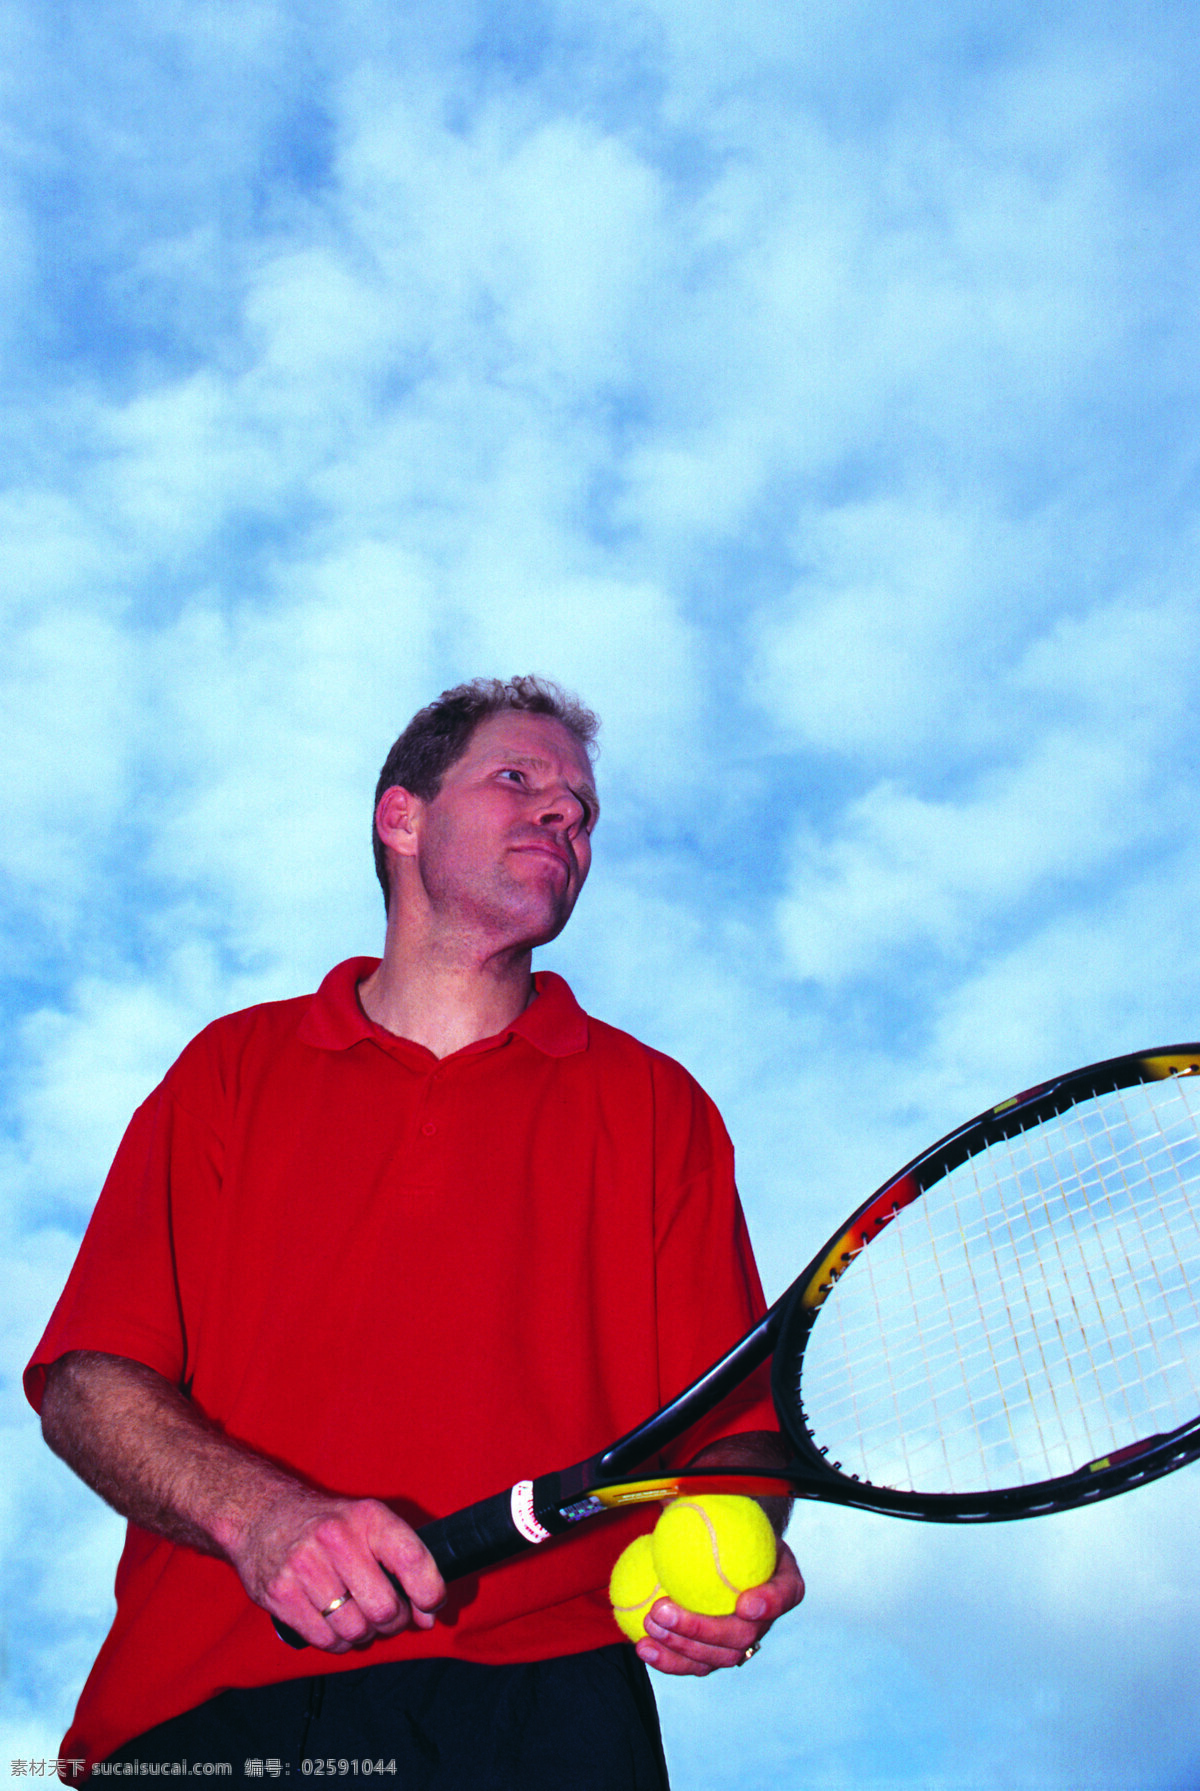 网球免费下载 比赛 场地 广告 大 辞典 激烈 健康 矫健 竞赛 球拍 体育 网球 选手 羽毛球 熟练 球员 运动 文化艺术